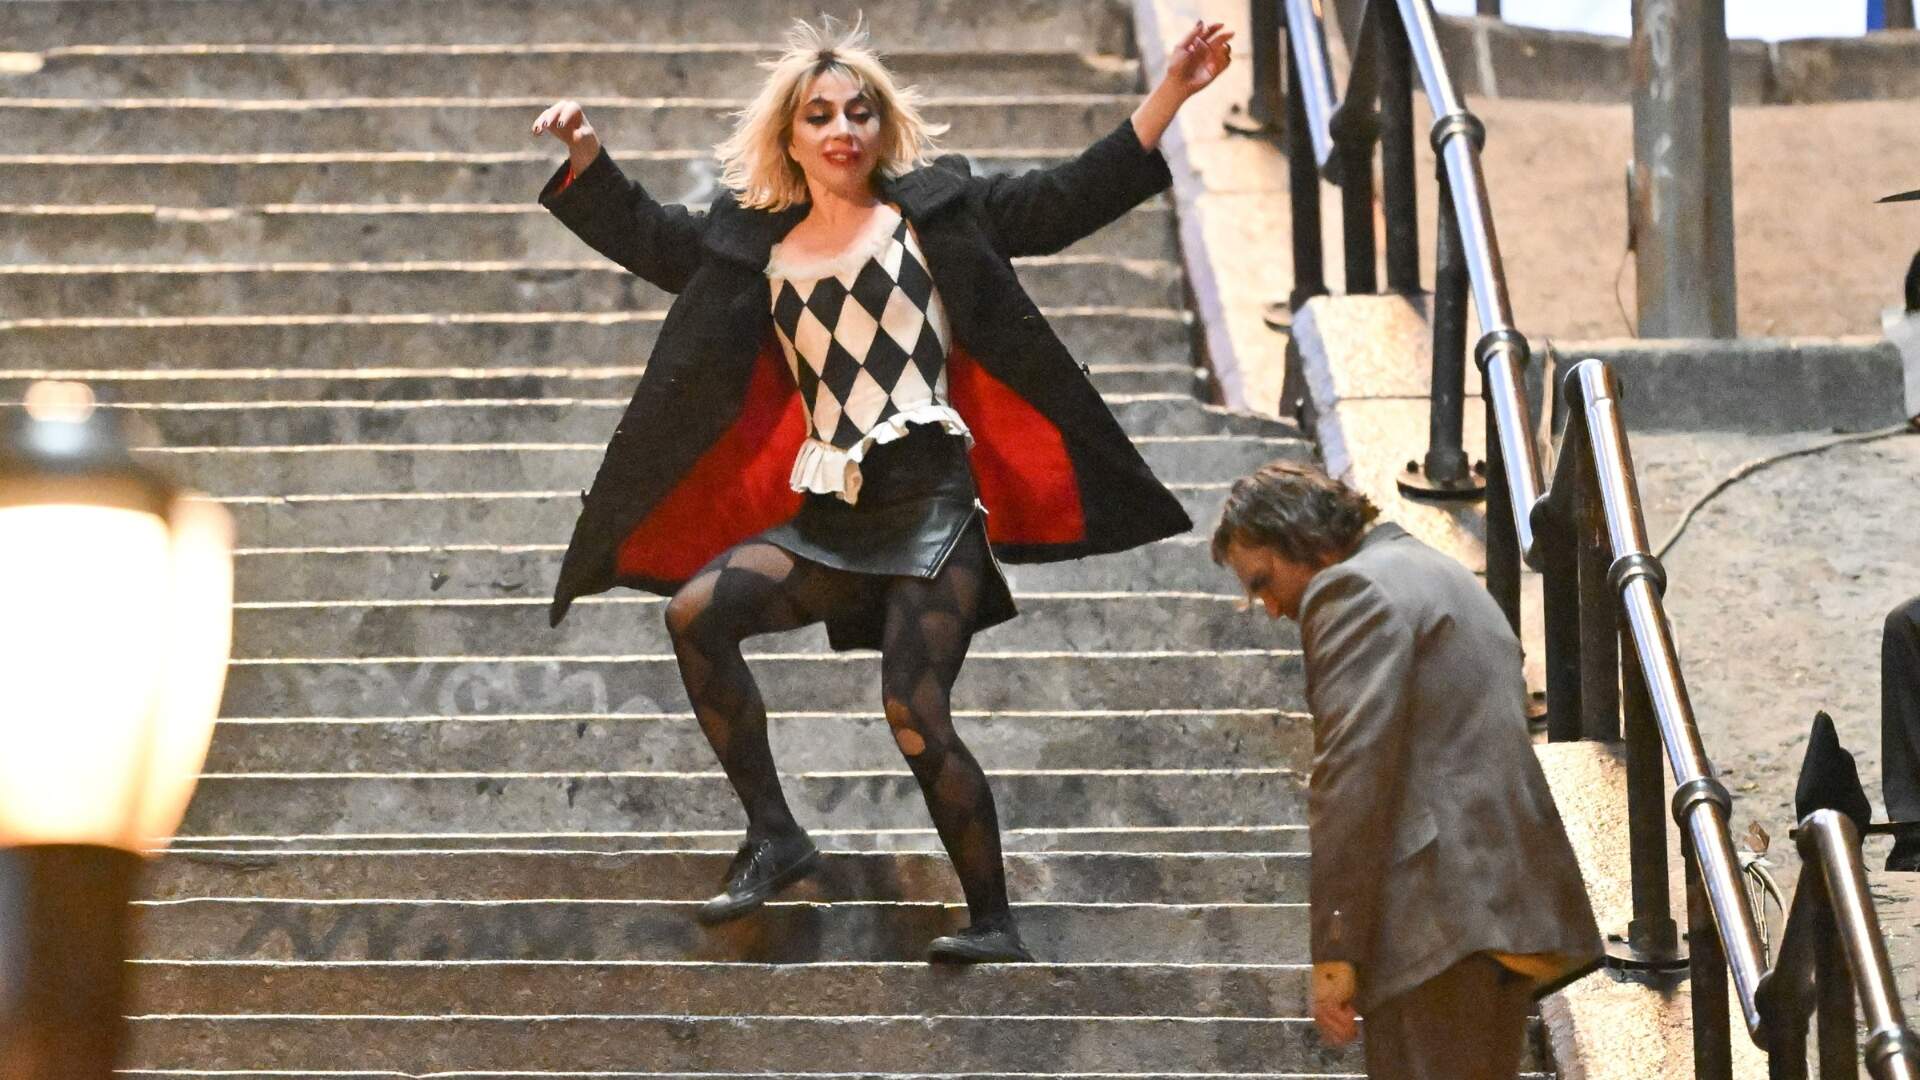 Joker: Folie à Deux: Diretor de fotografia revela relacionamento controverso com Lady Gaga em set: “Há algo estranho acontecendo aqui” - Metropolitana FM